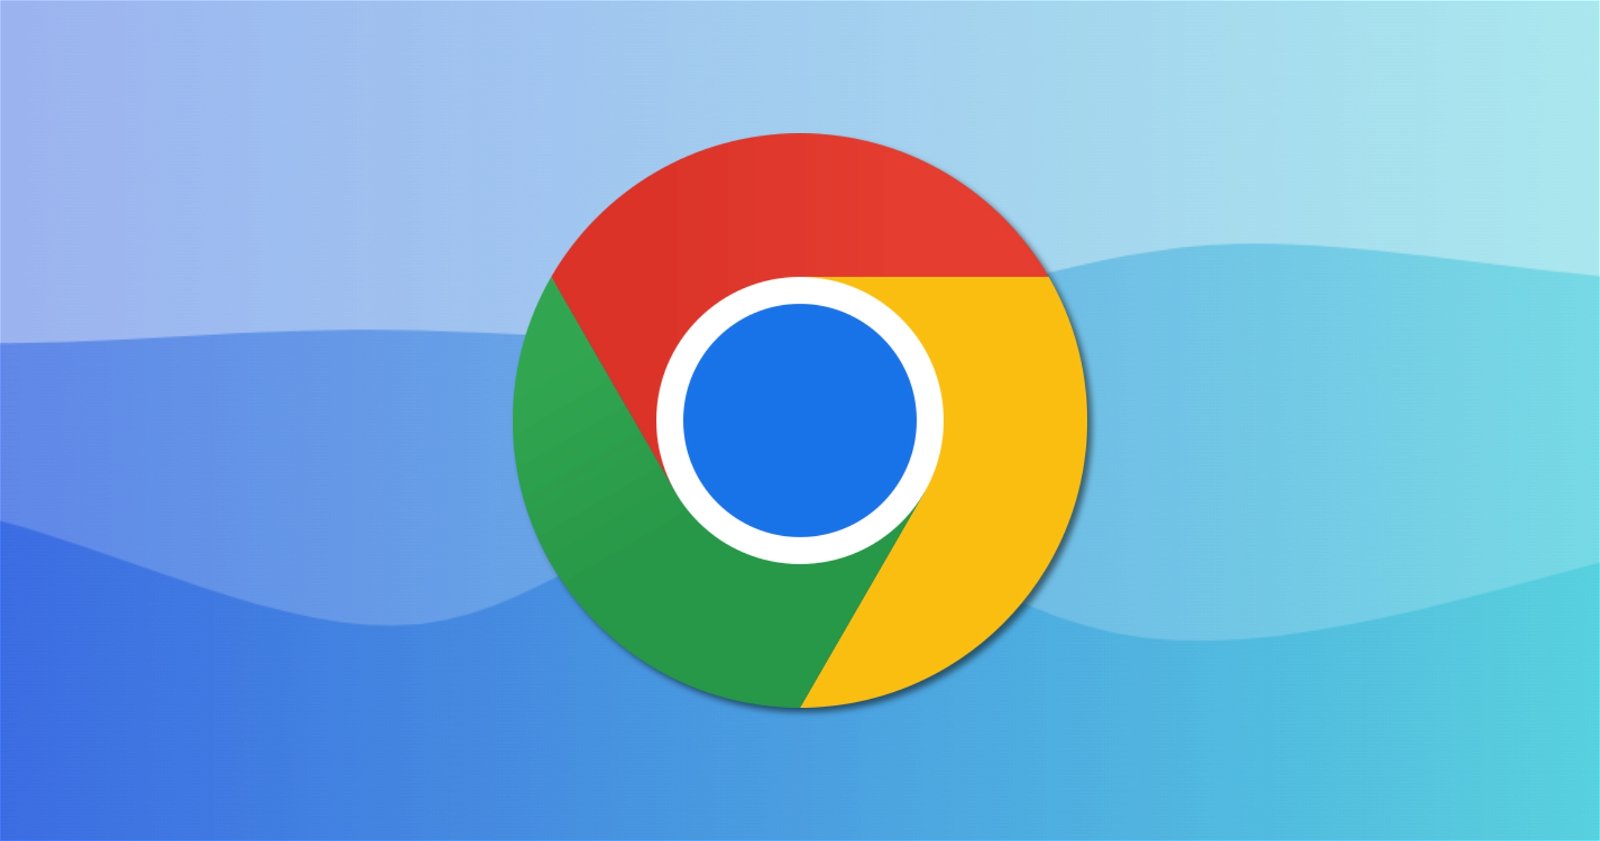 Google Chrome w przyszłym roku przestanie wspierać Windows 7 i 8.1